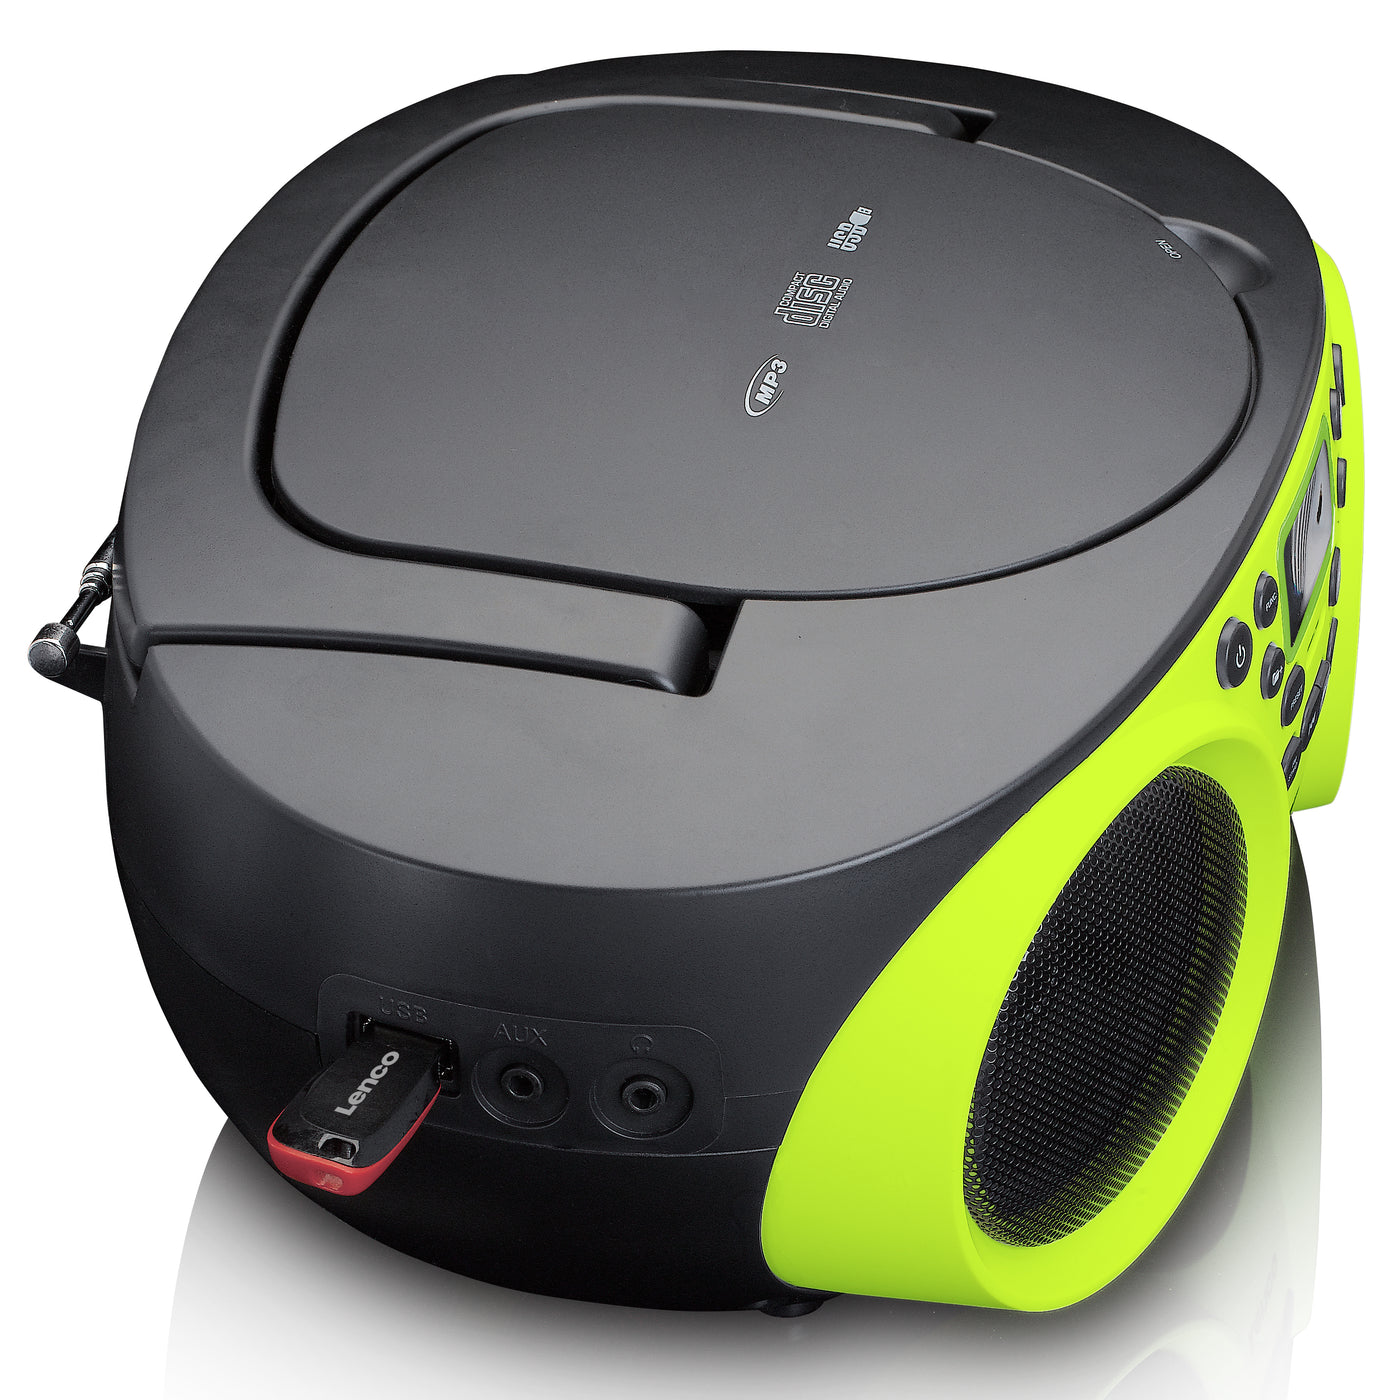 Lenco SCD-200LM - Radio/lecteur CD avec lecteur MP3 et fonction USB - Vert